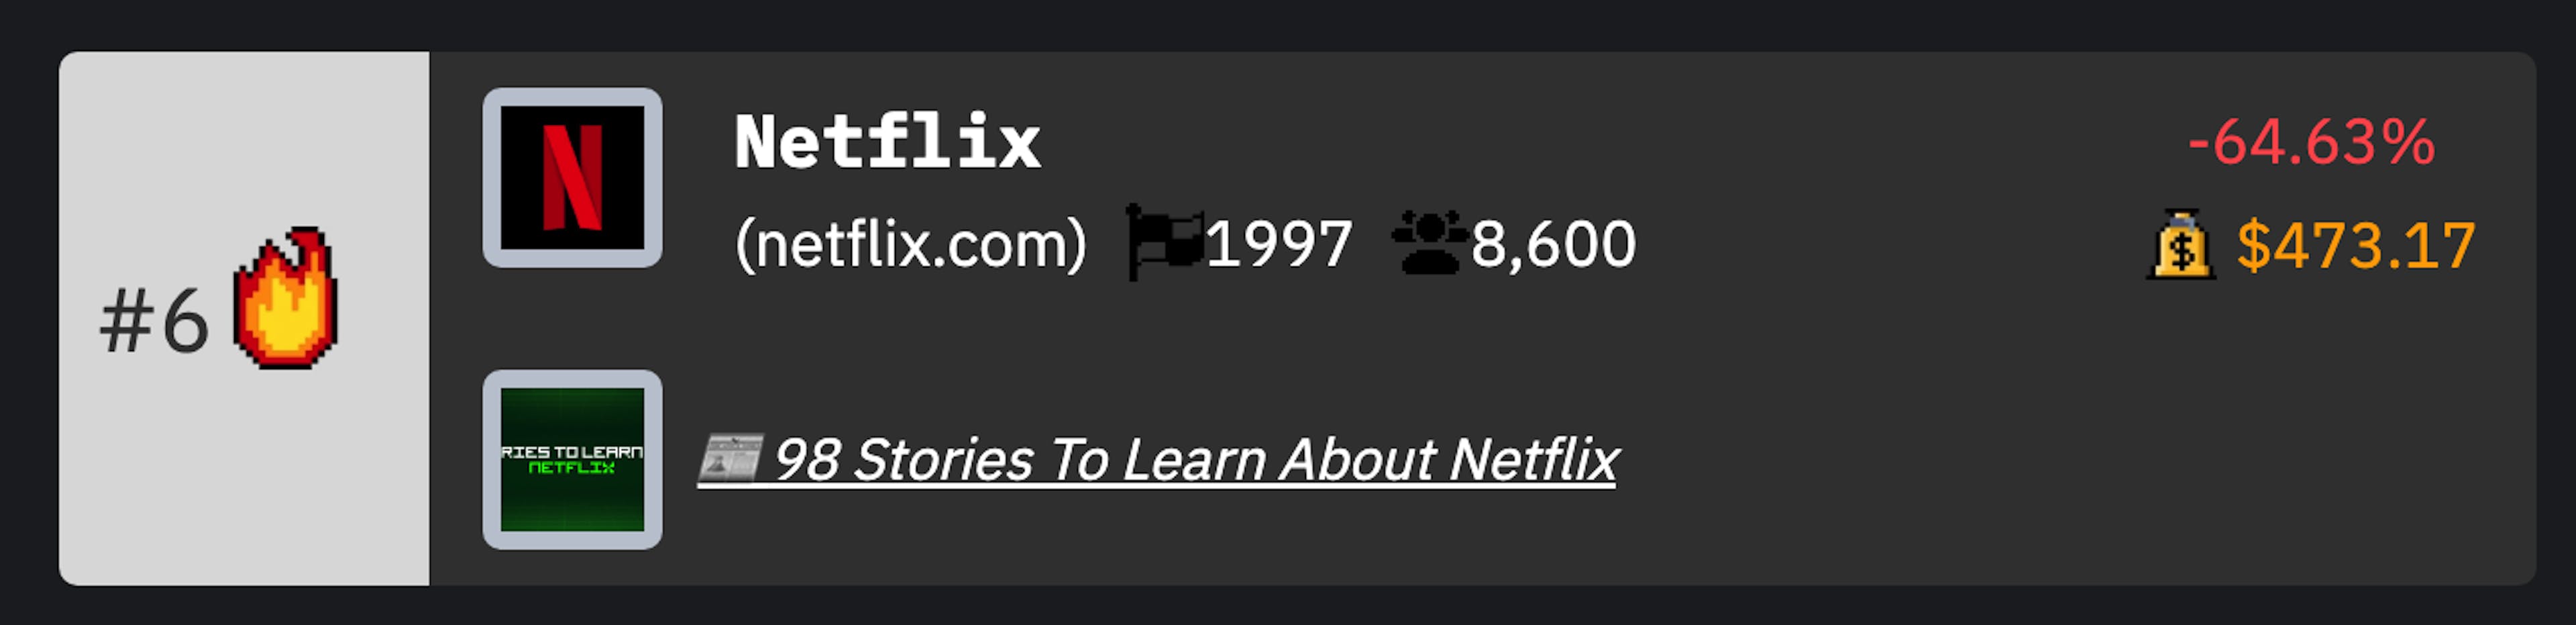 Netflix TCNB-Ranking